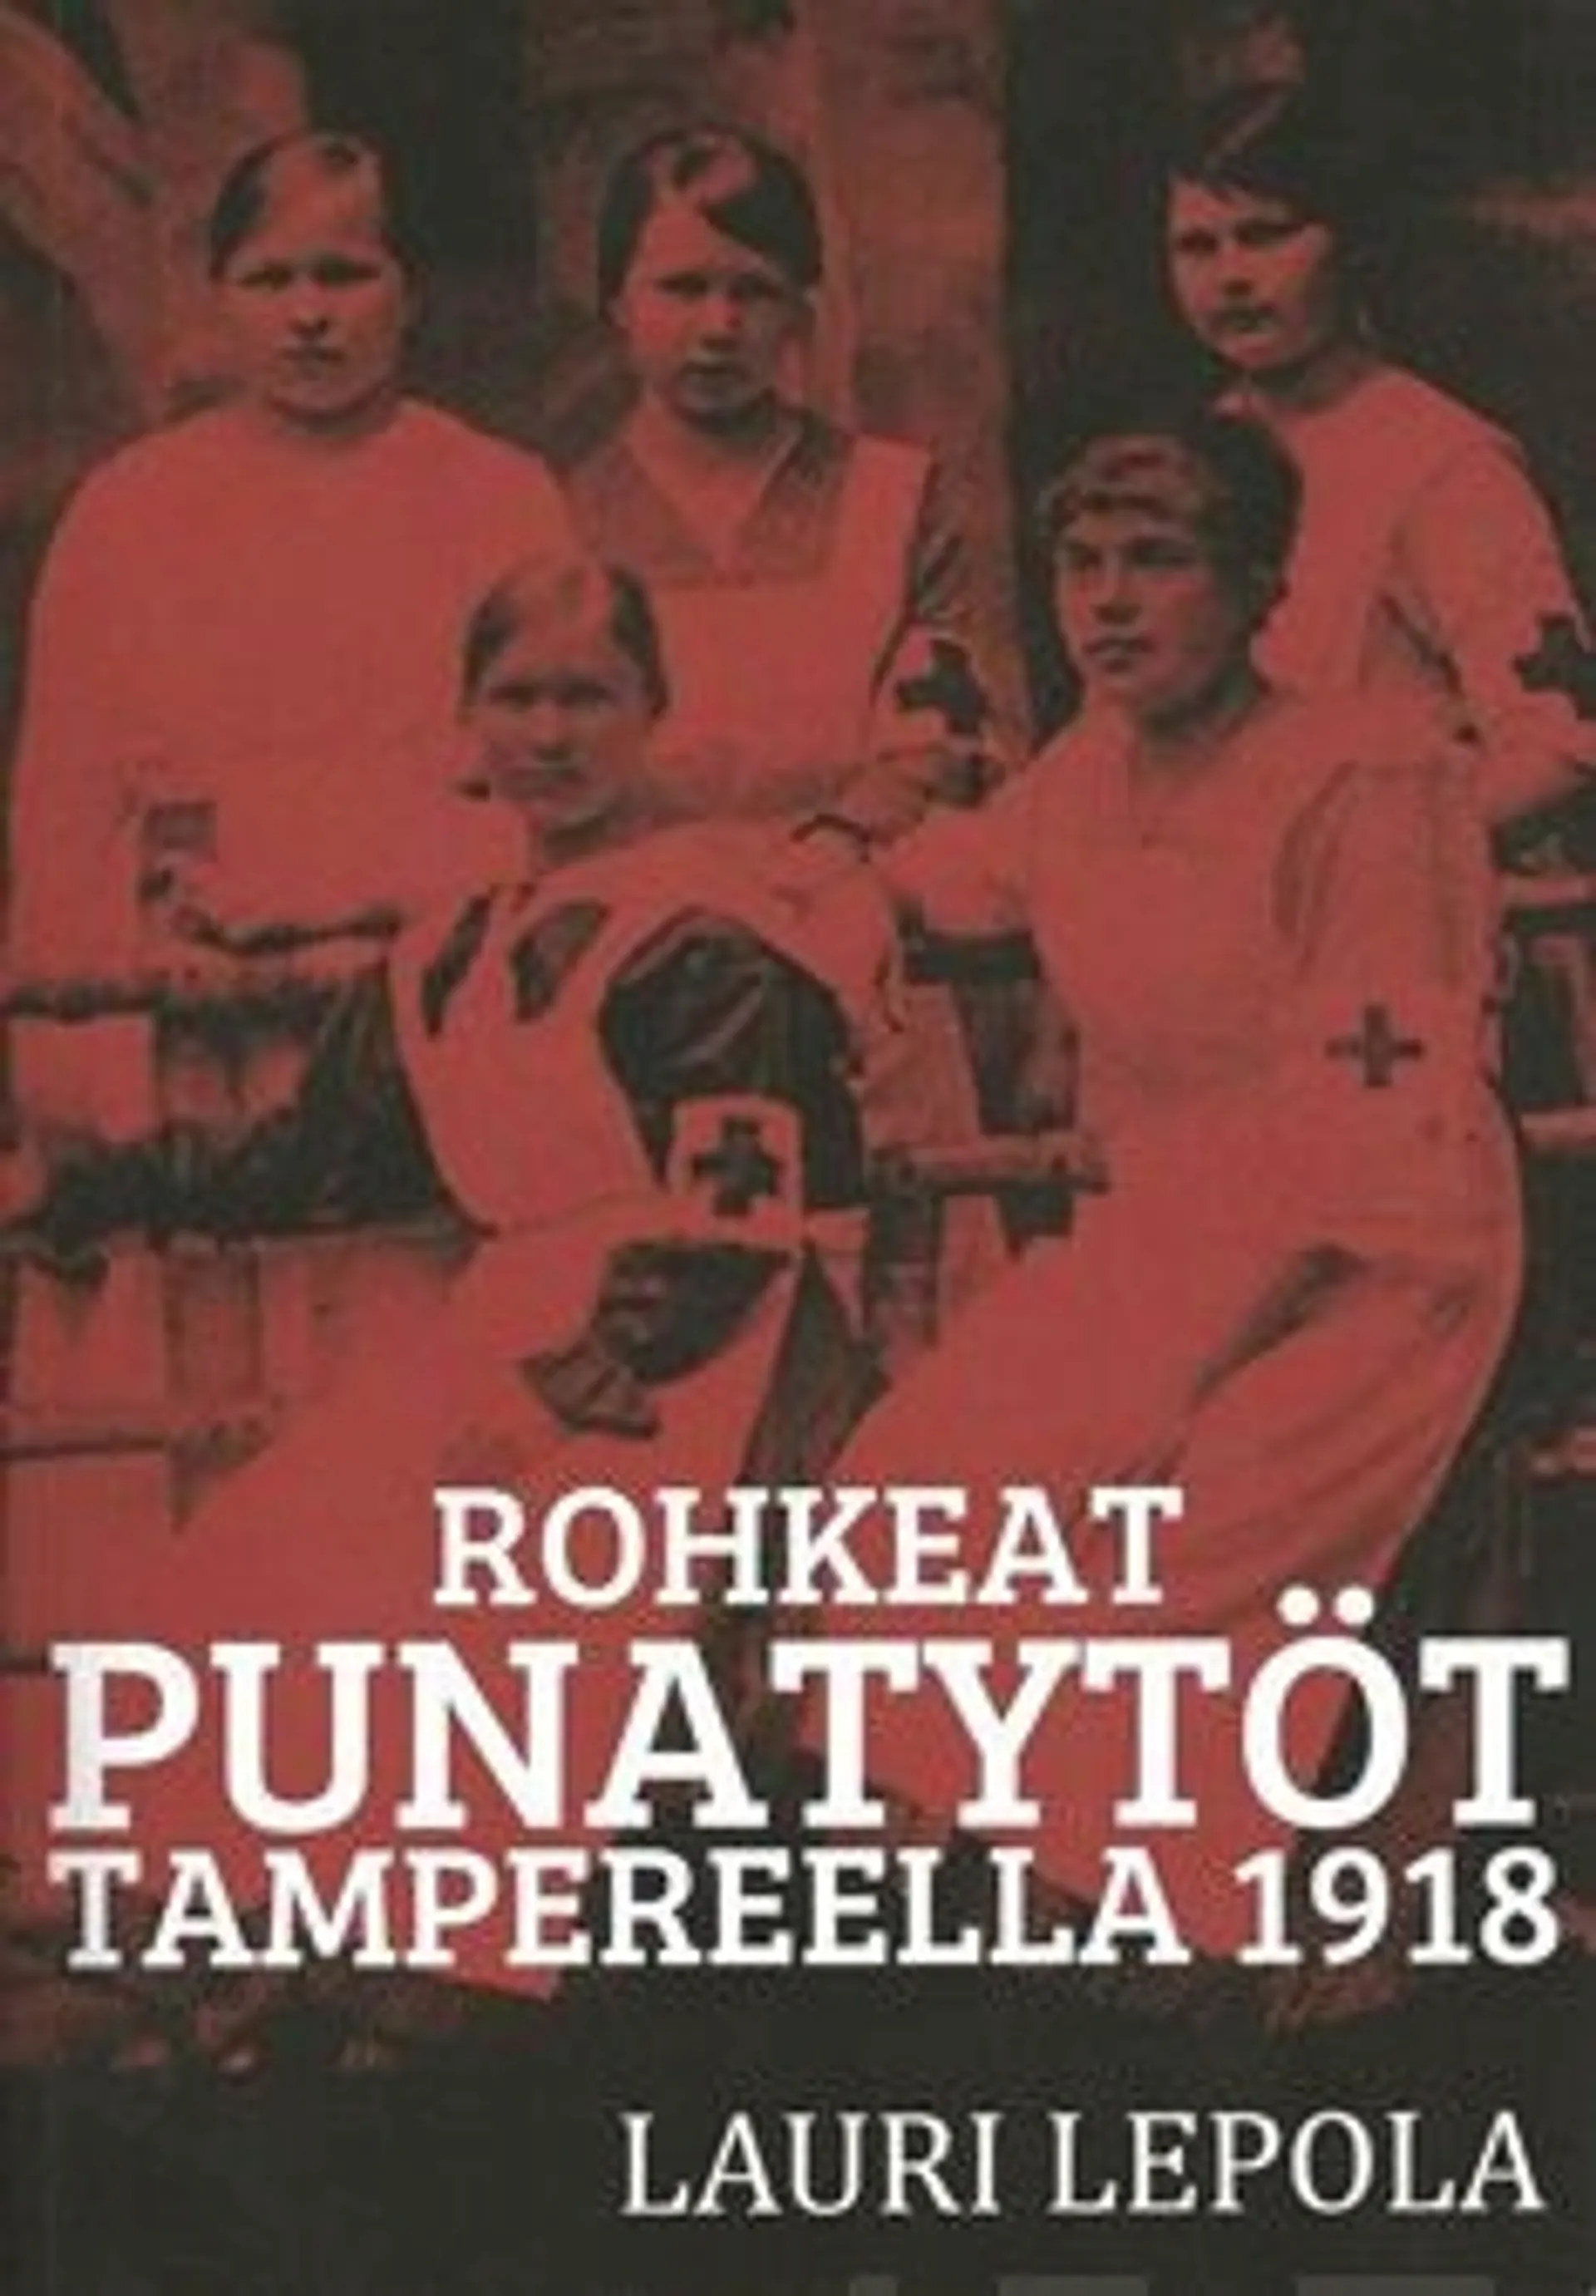 Lepola, Rohkeat punatytöt Tampereella 1918